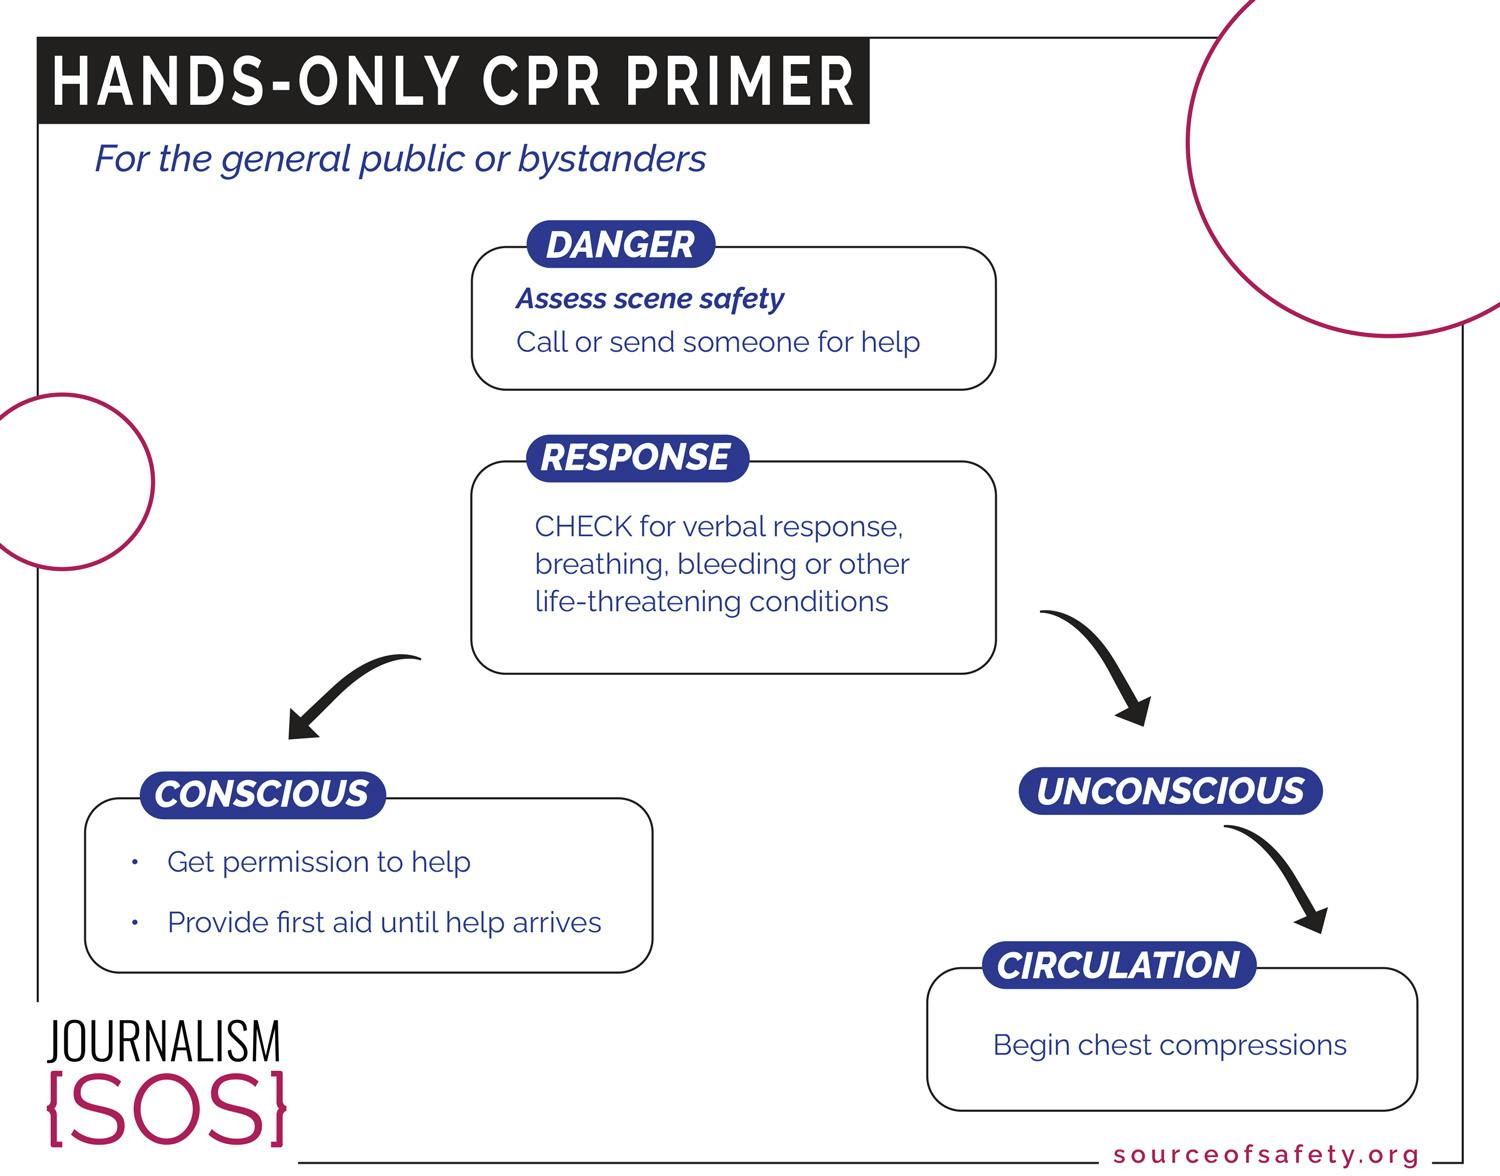 CPR PRIMER A